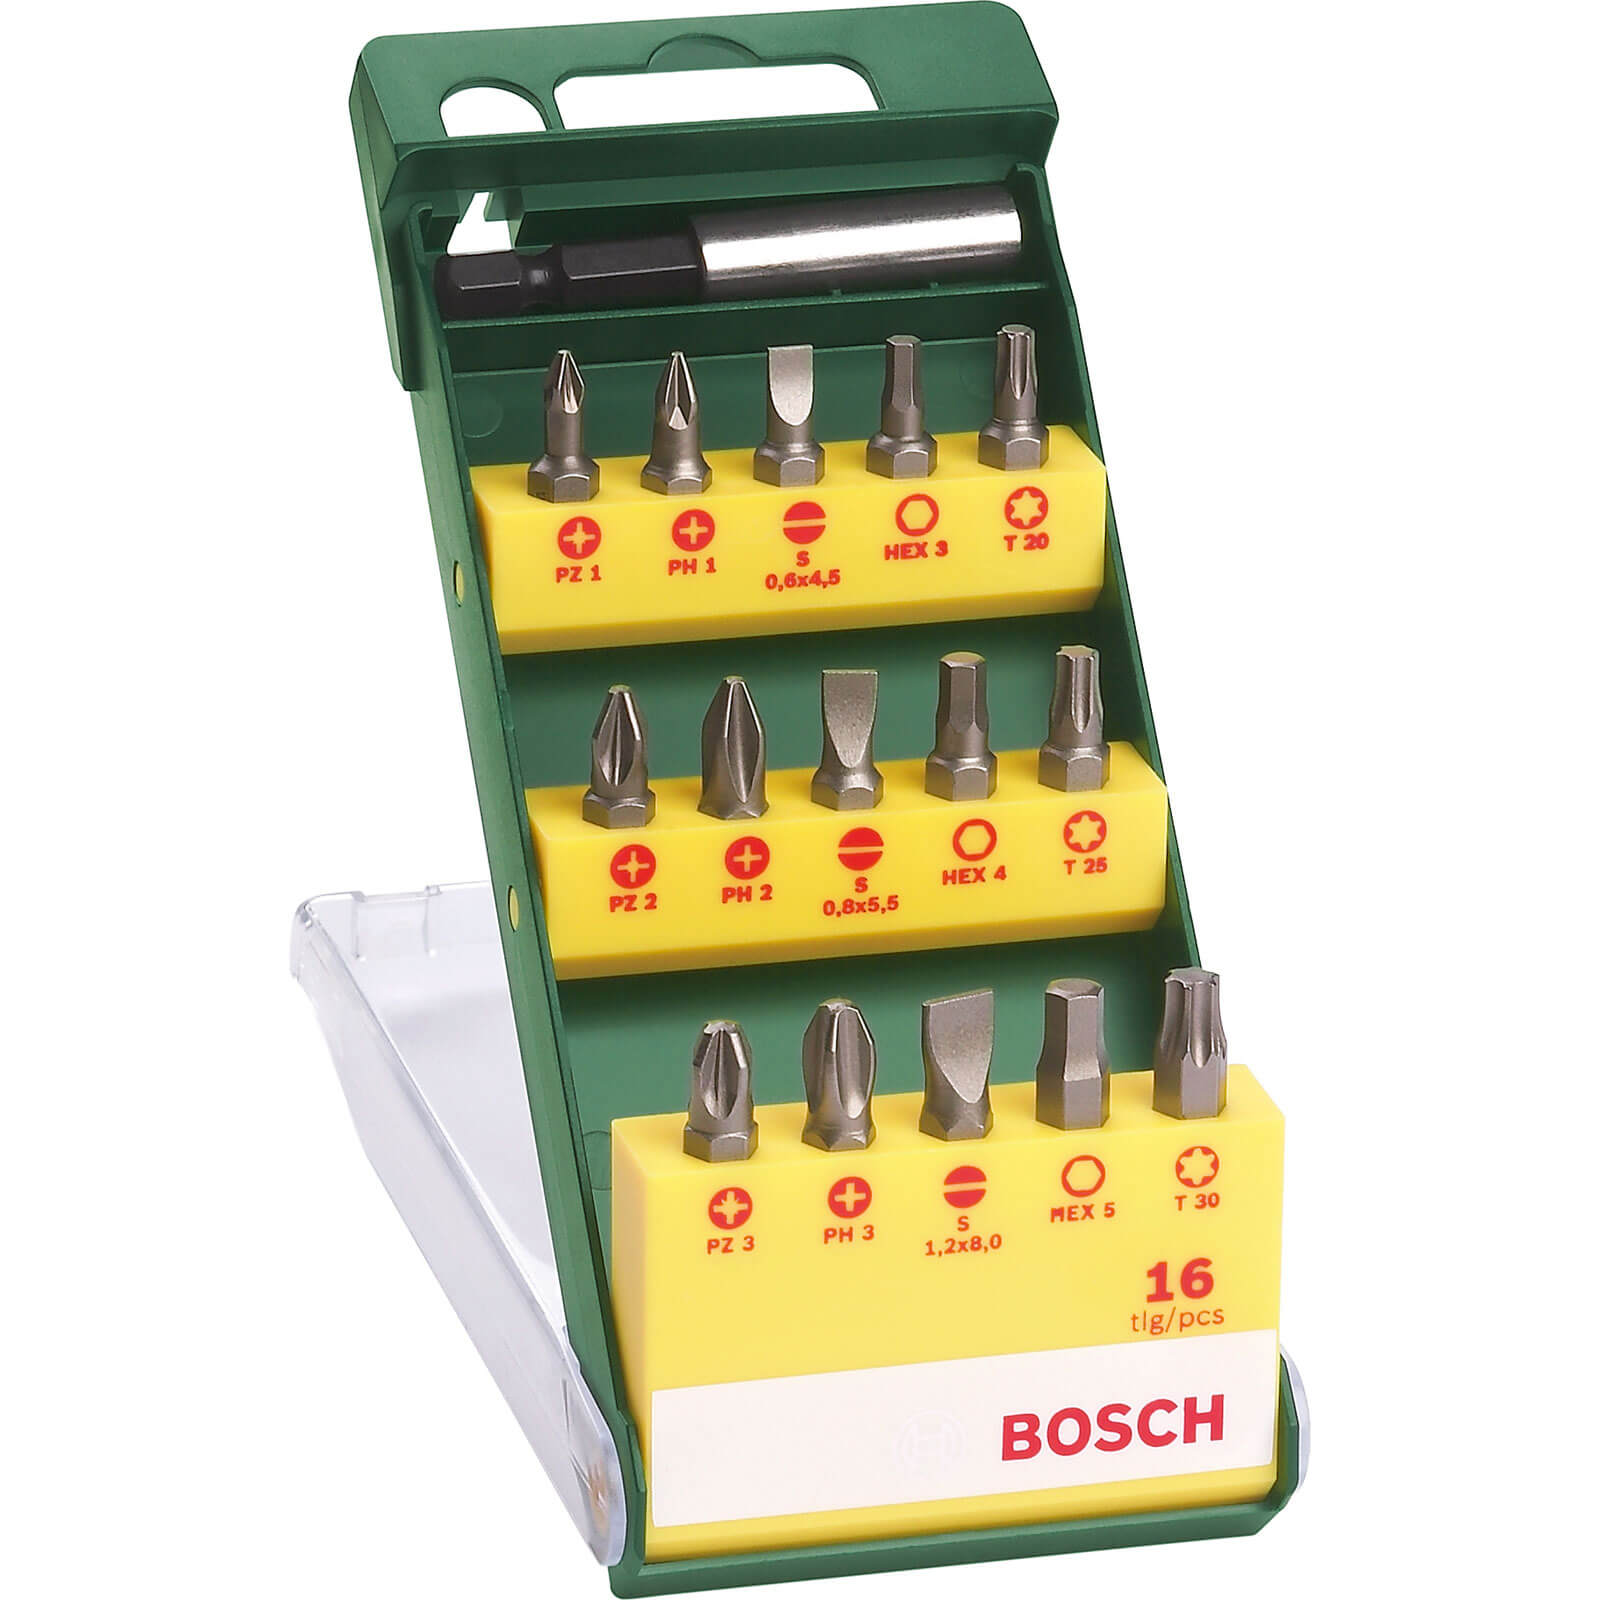 Image of Bosch 16 Piece Mixed Screwdriver Bit Set